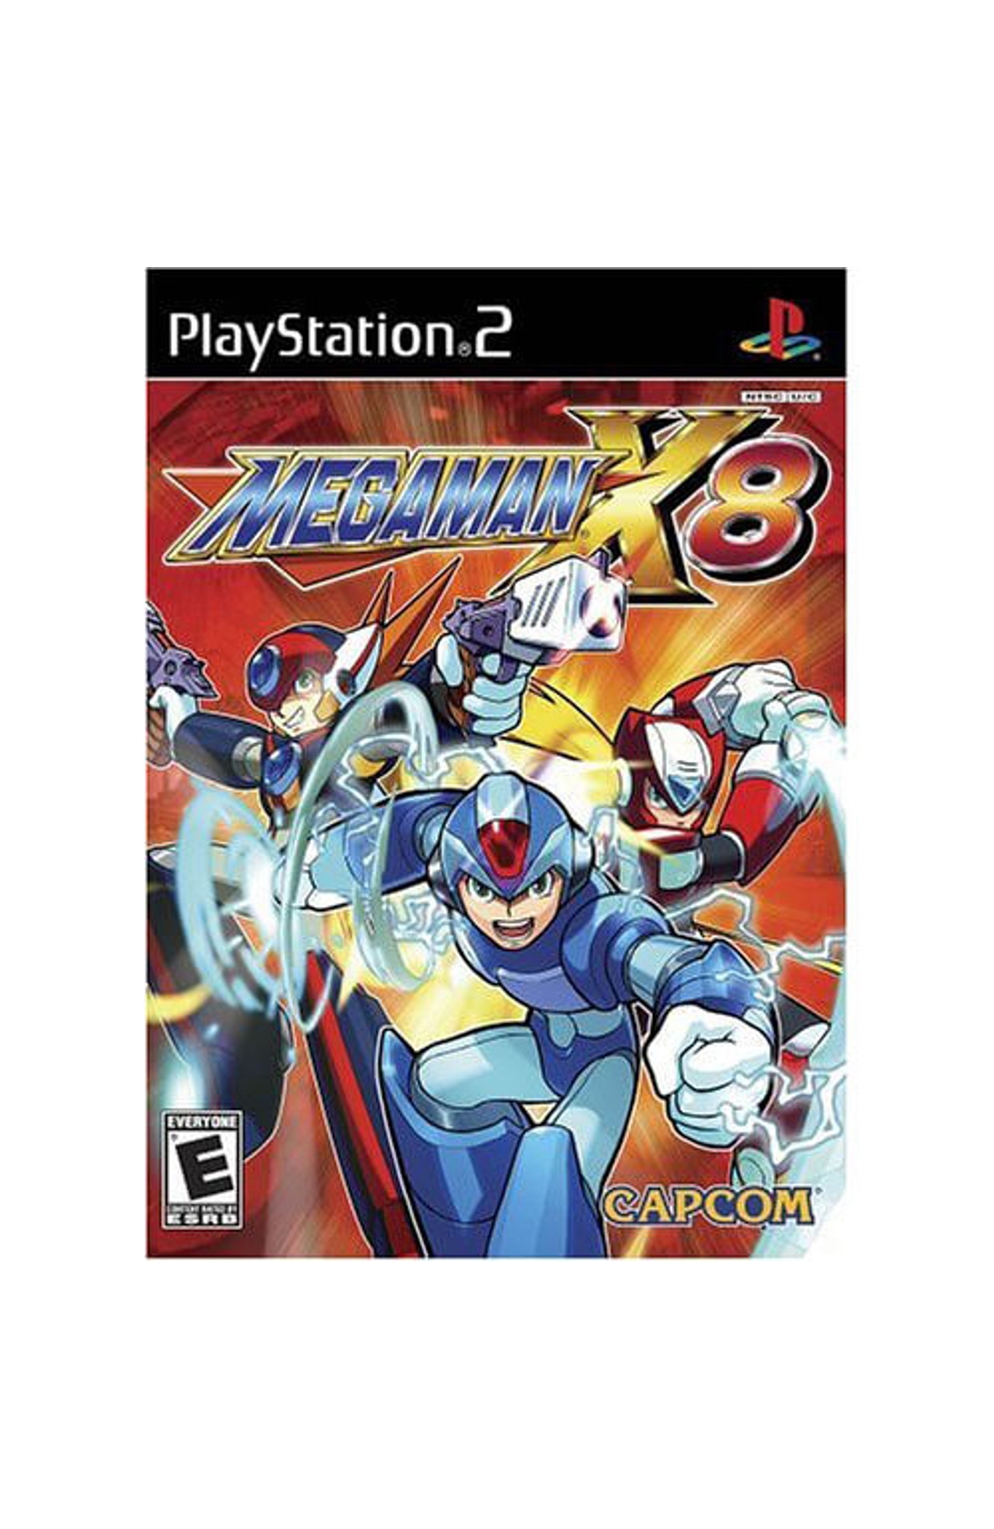 Playstation 2 Ps2 Megaman X8